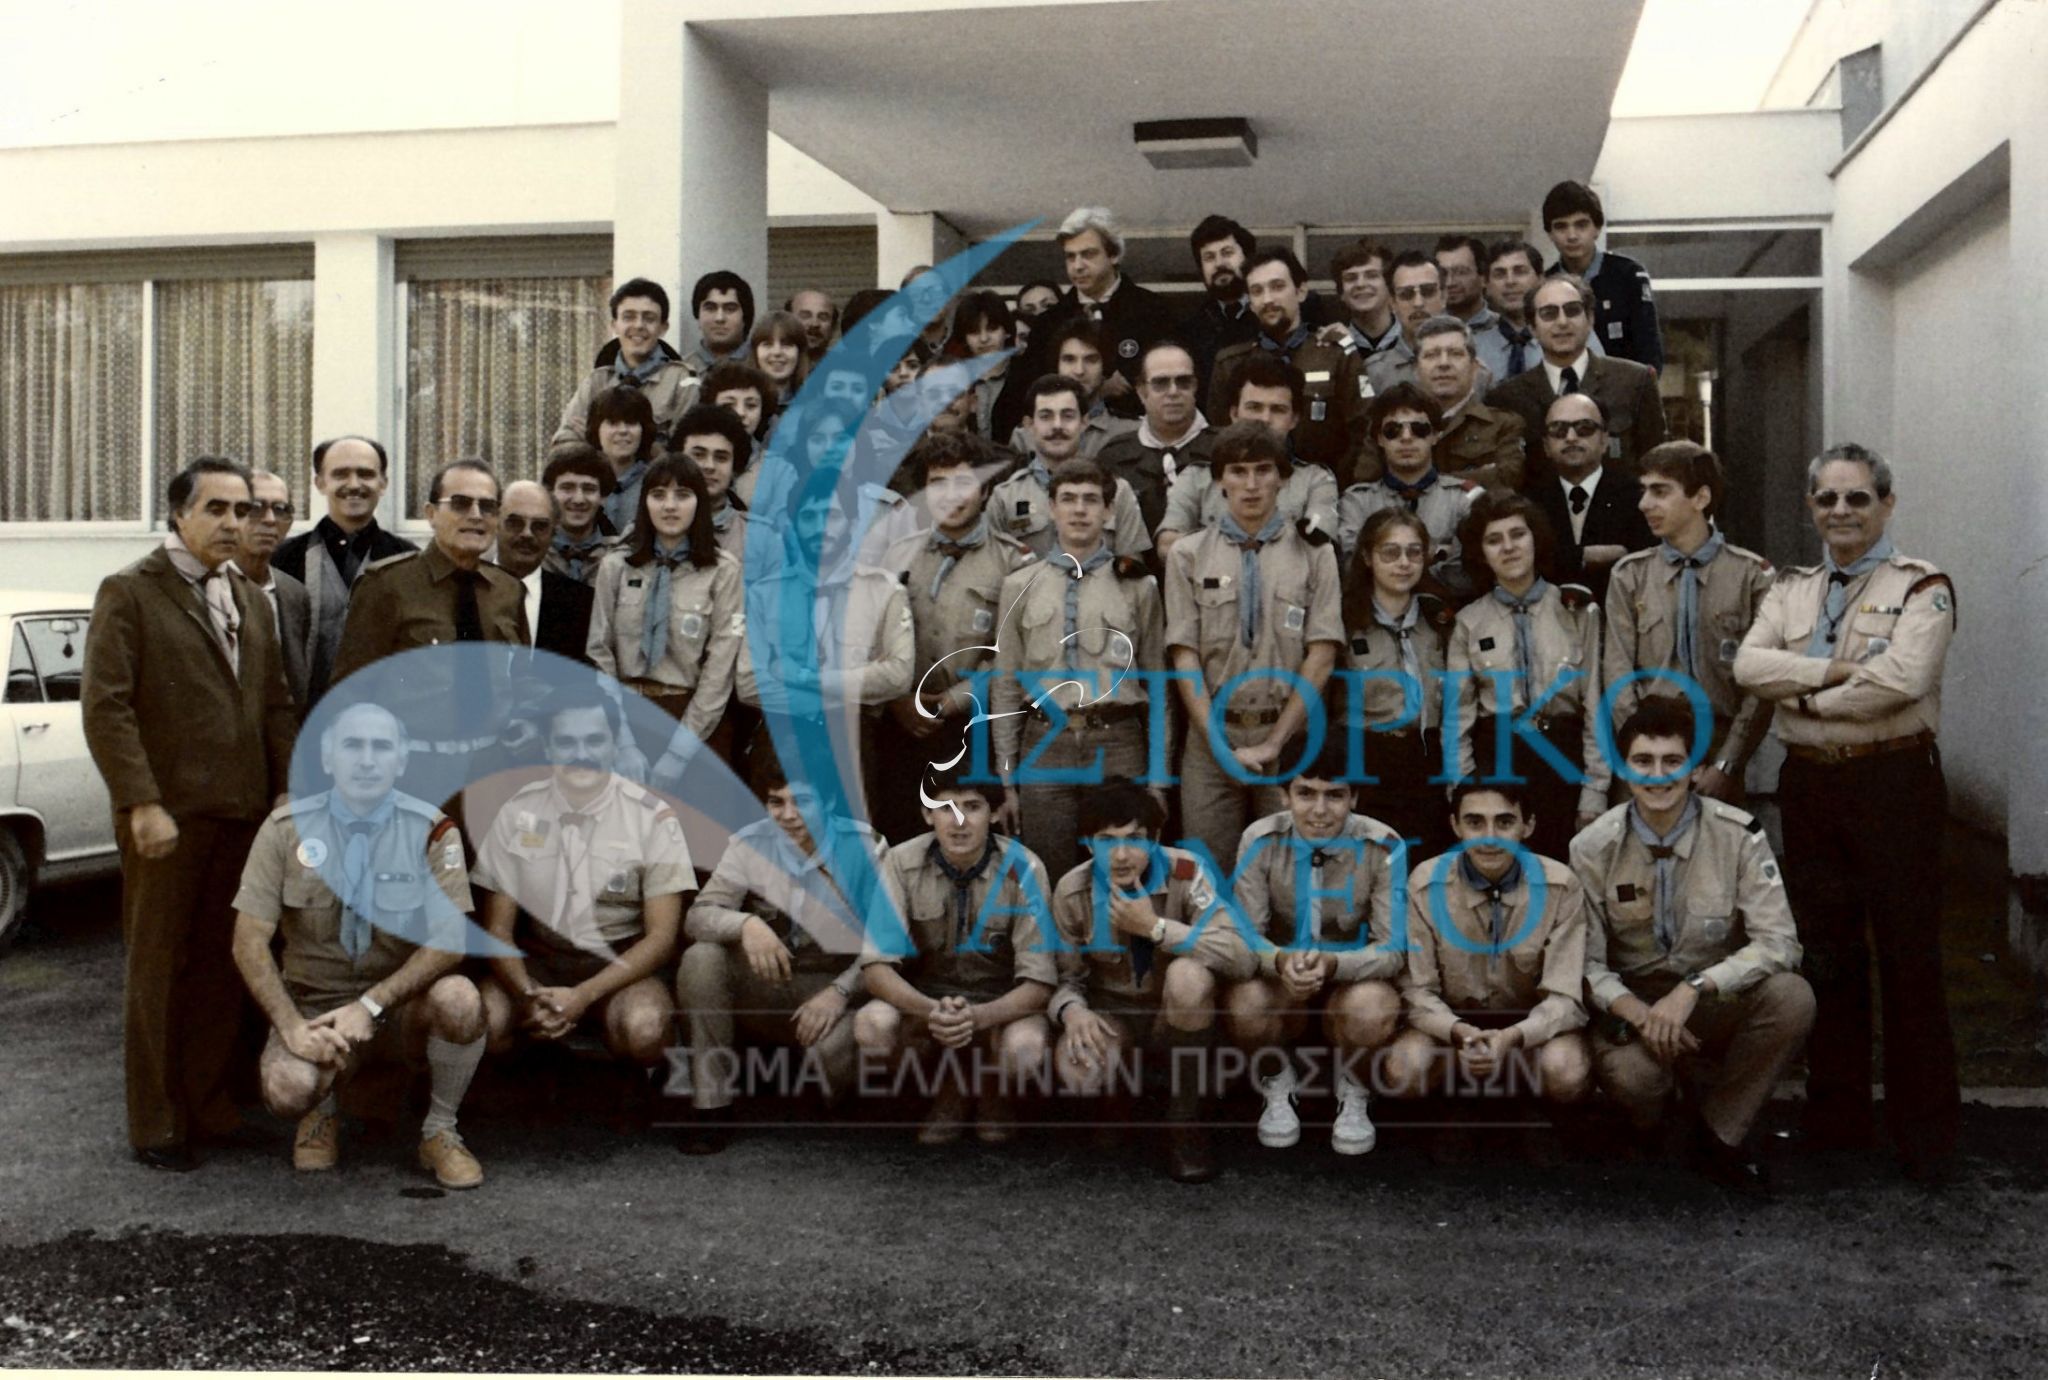 Ο ΓΕ Γ. Ασημακόπουλος με προσκόπους μετά την συνάντηση βαθμοφόρων της ΠΕ Θεσσαλίας το 1982 στη Λάρισα.